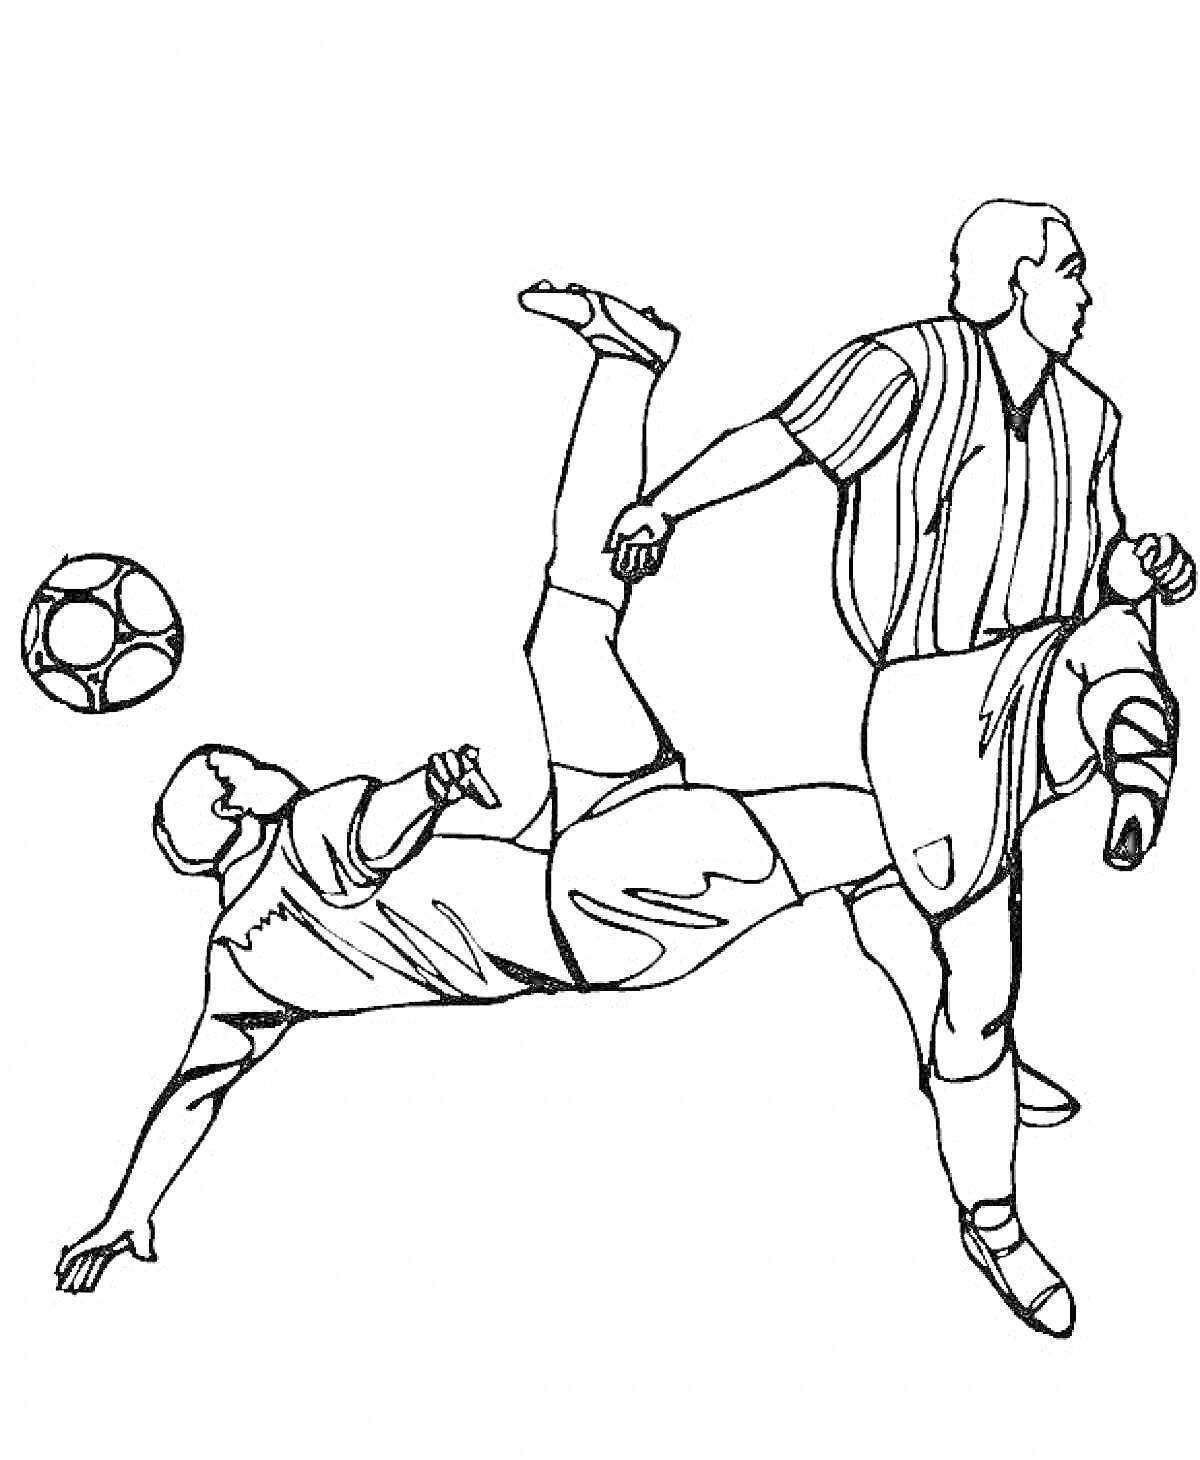 Раскраска Два футболиста, один исполняет удар через себя, второй борется за мяч